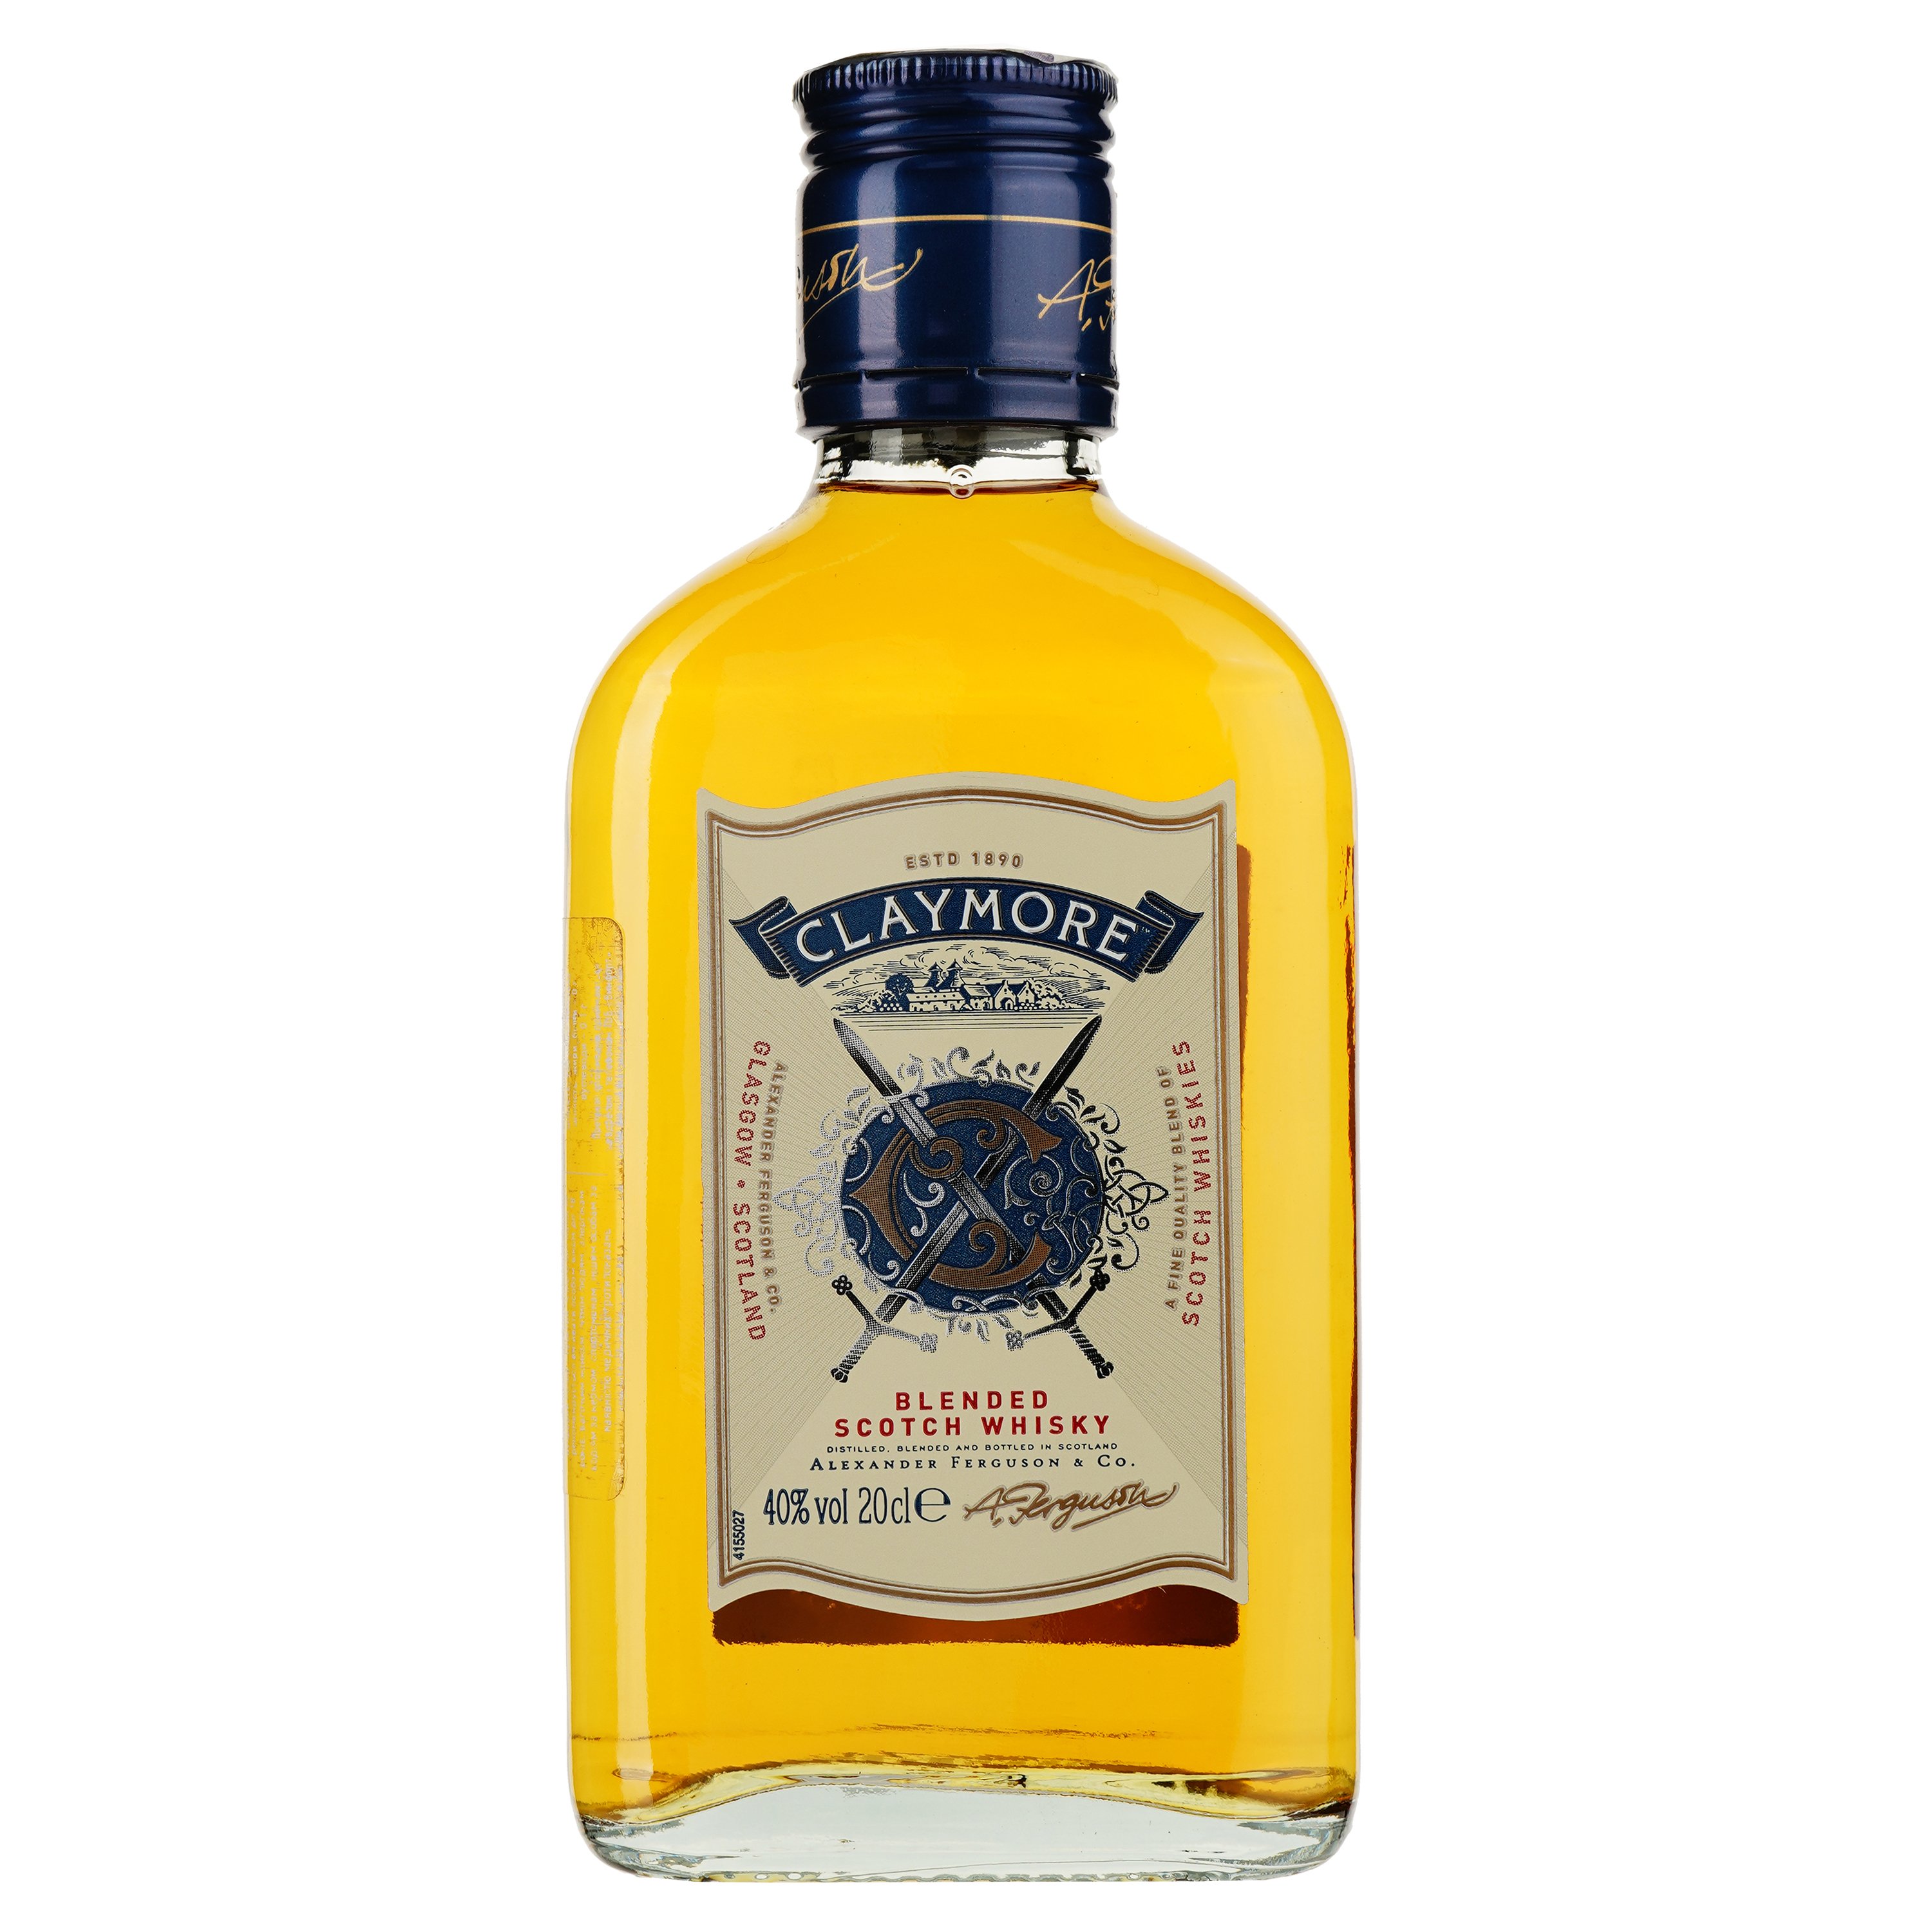 Віскі Claymore Blended Scotch Whisky, 40%, 0,2 л - фото 1